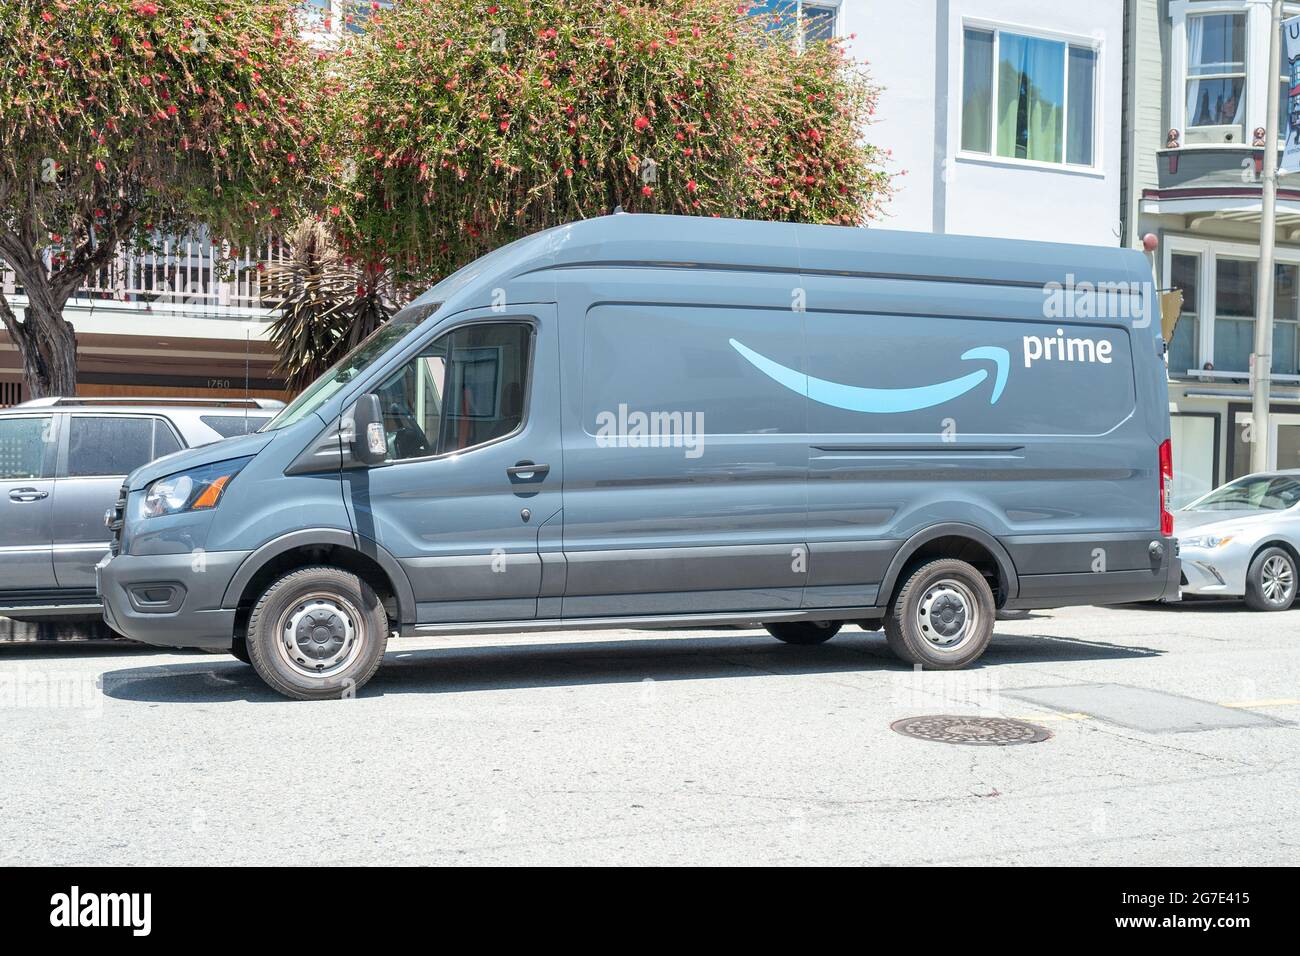 Camion di consegna Amazon prime a Cow Hollow, San Francisco, California, 14 giugno 2021. () Foto Stock